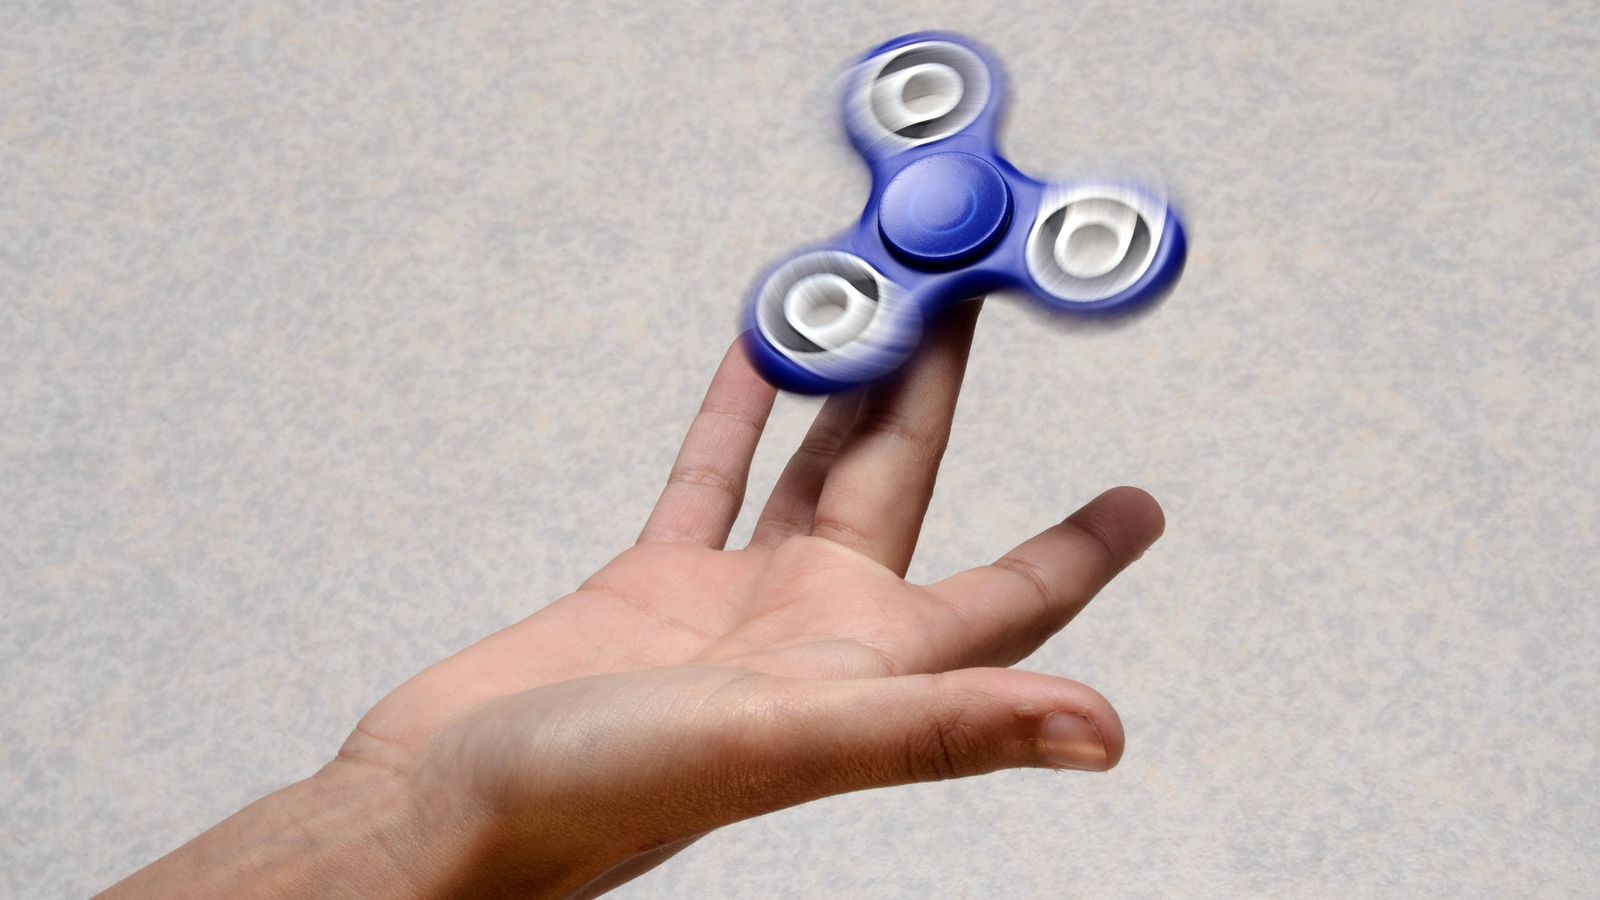 fidget-spinner-el-juguete-rey-del-recreo-que-preocupa-a-padres-y-profesores.jpg (1600×900)